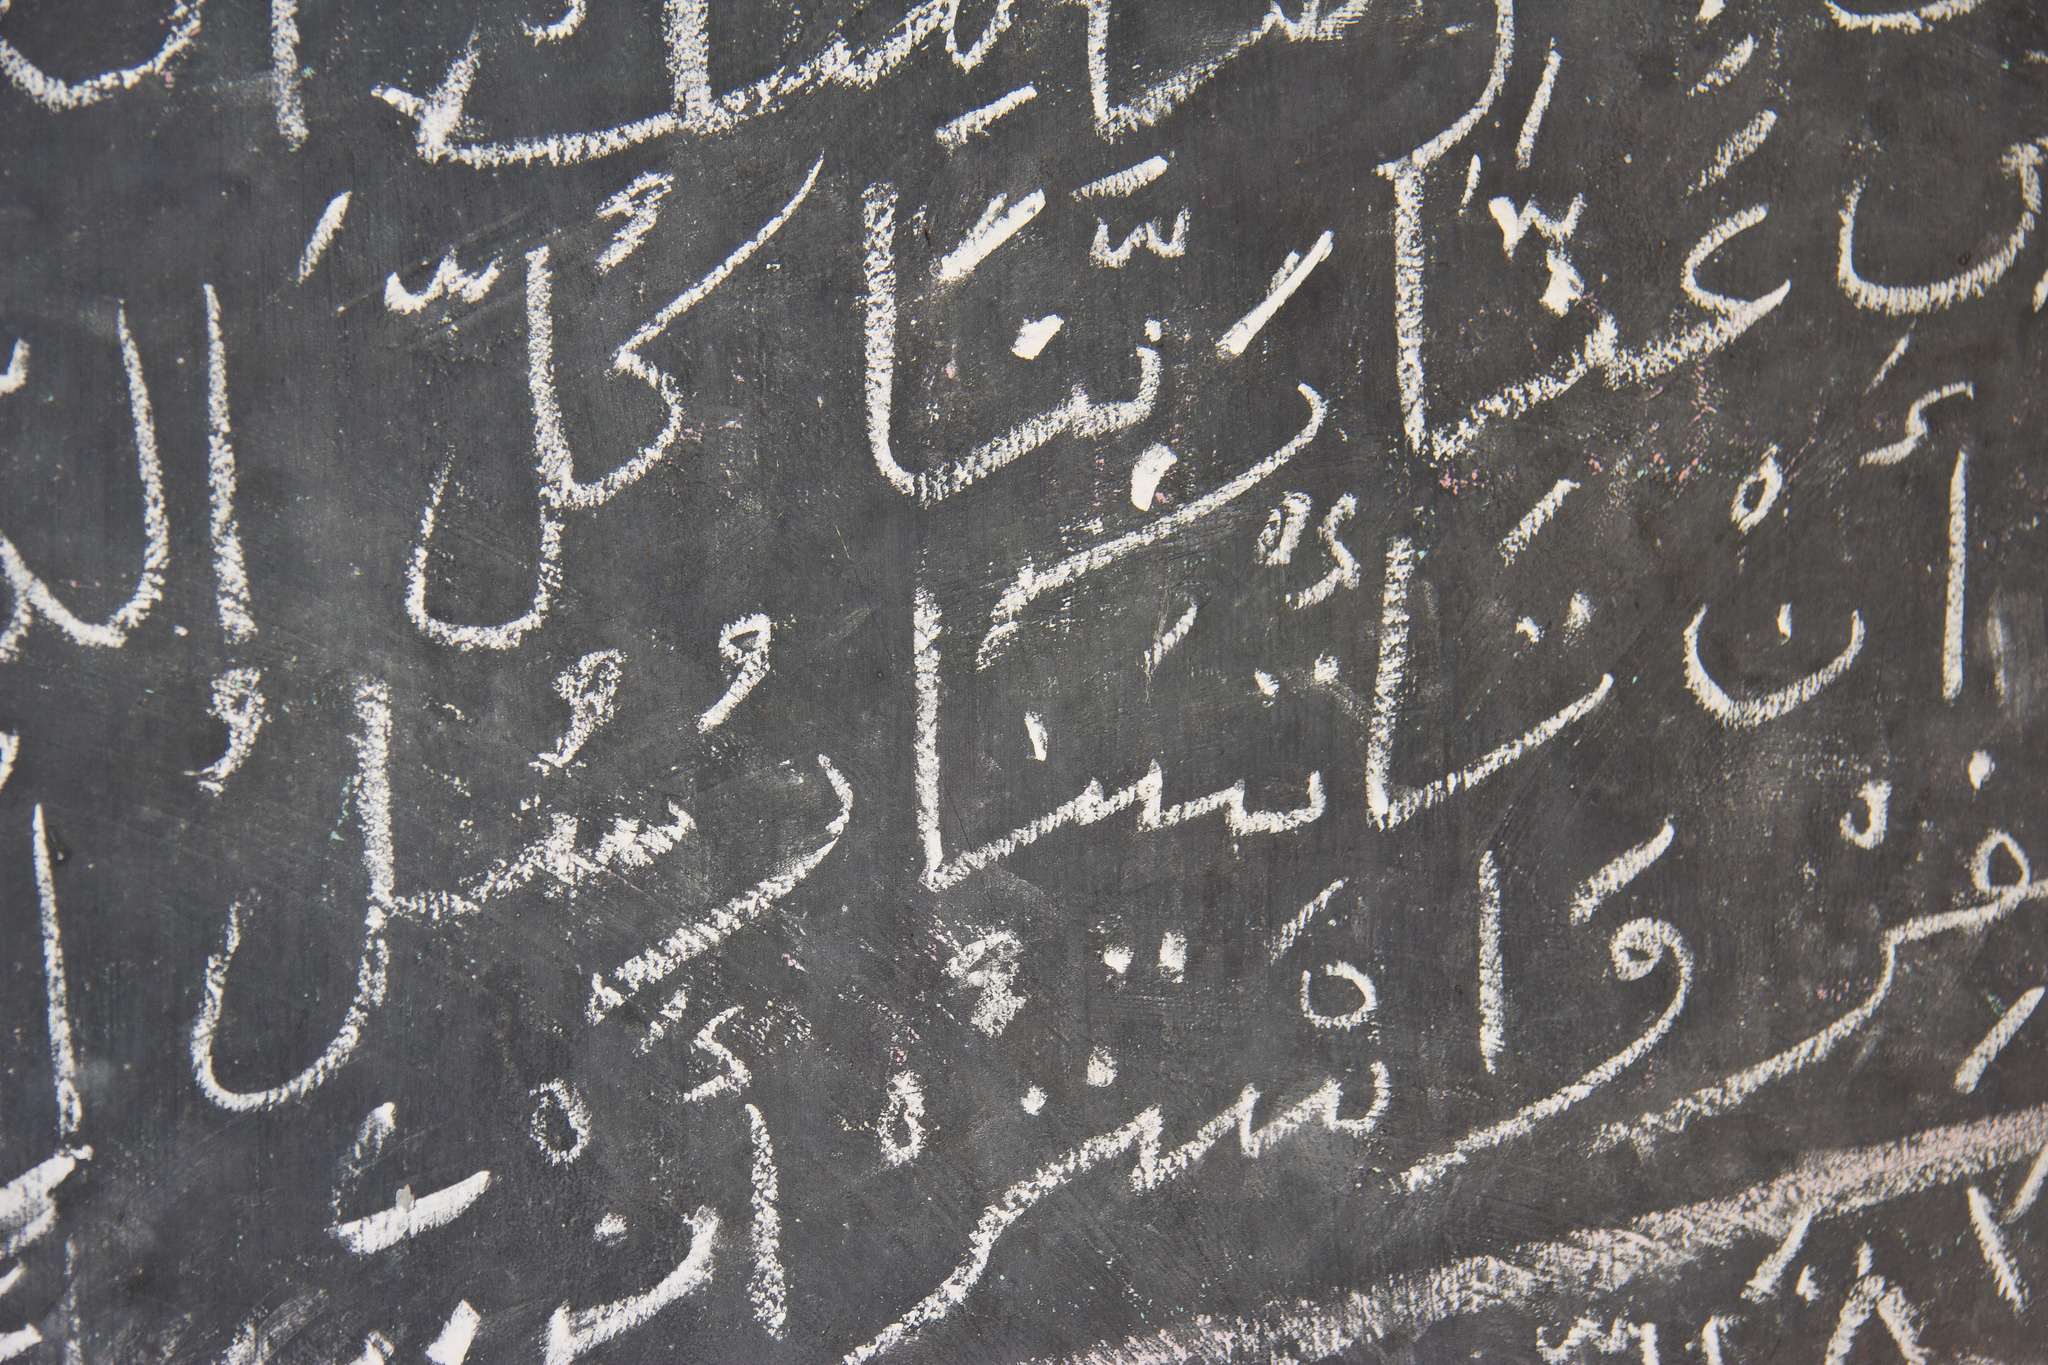 Arabische Schrift auf einer Tafel